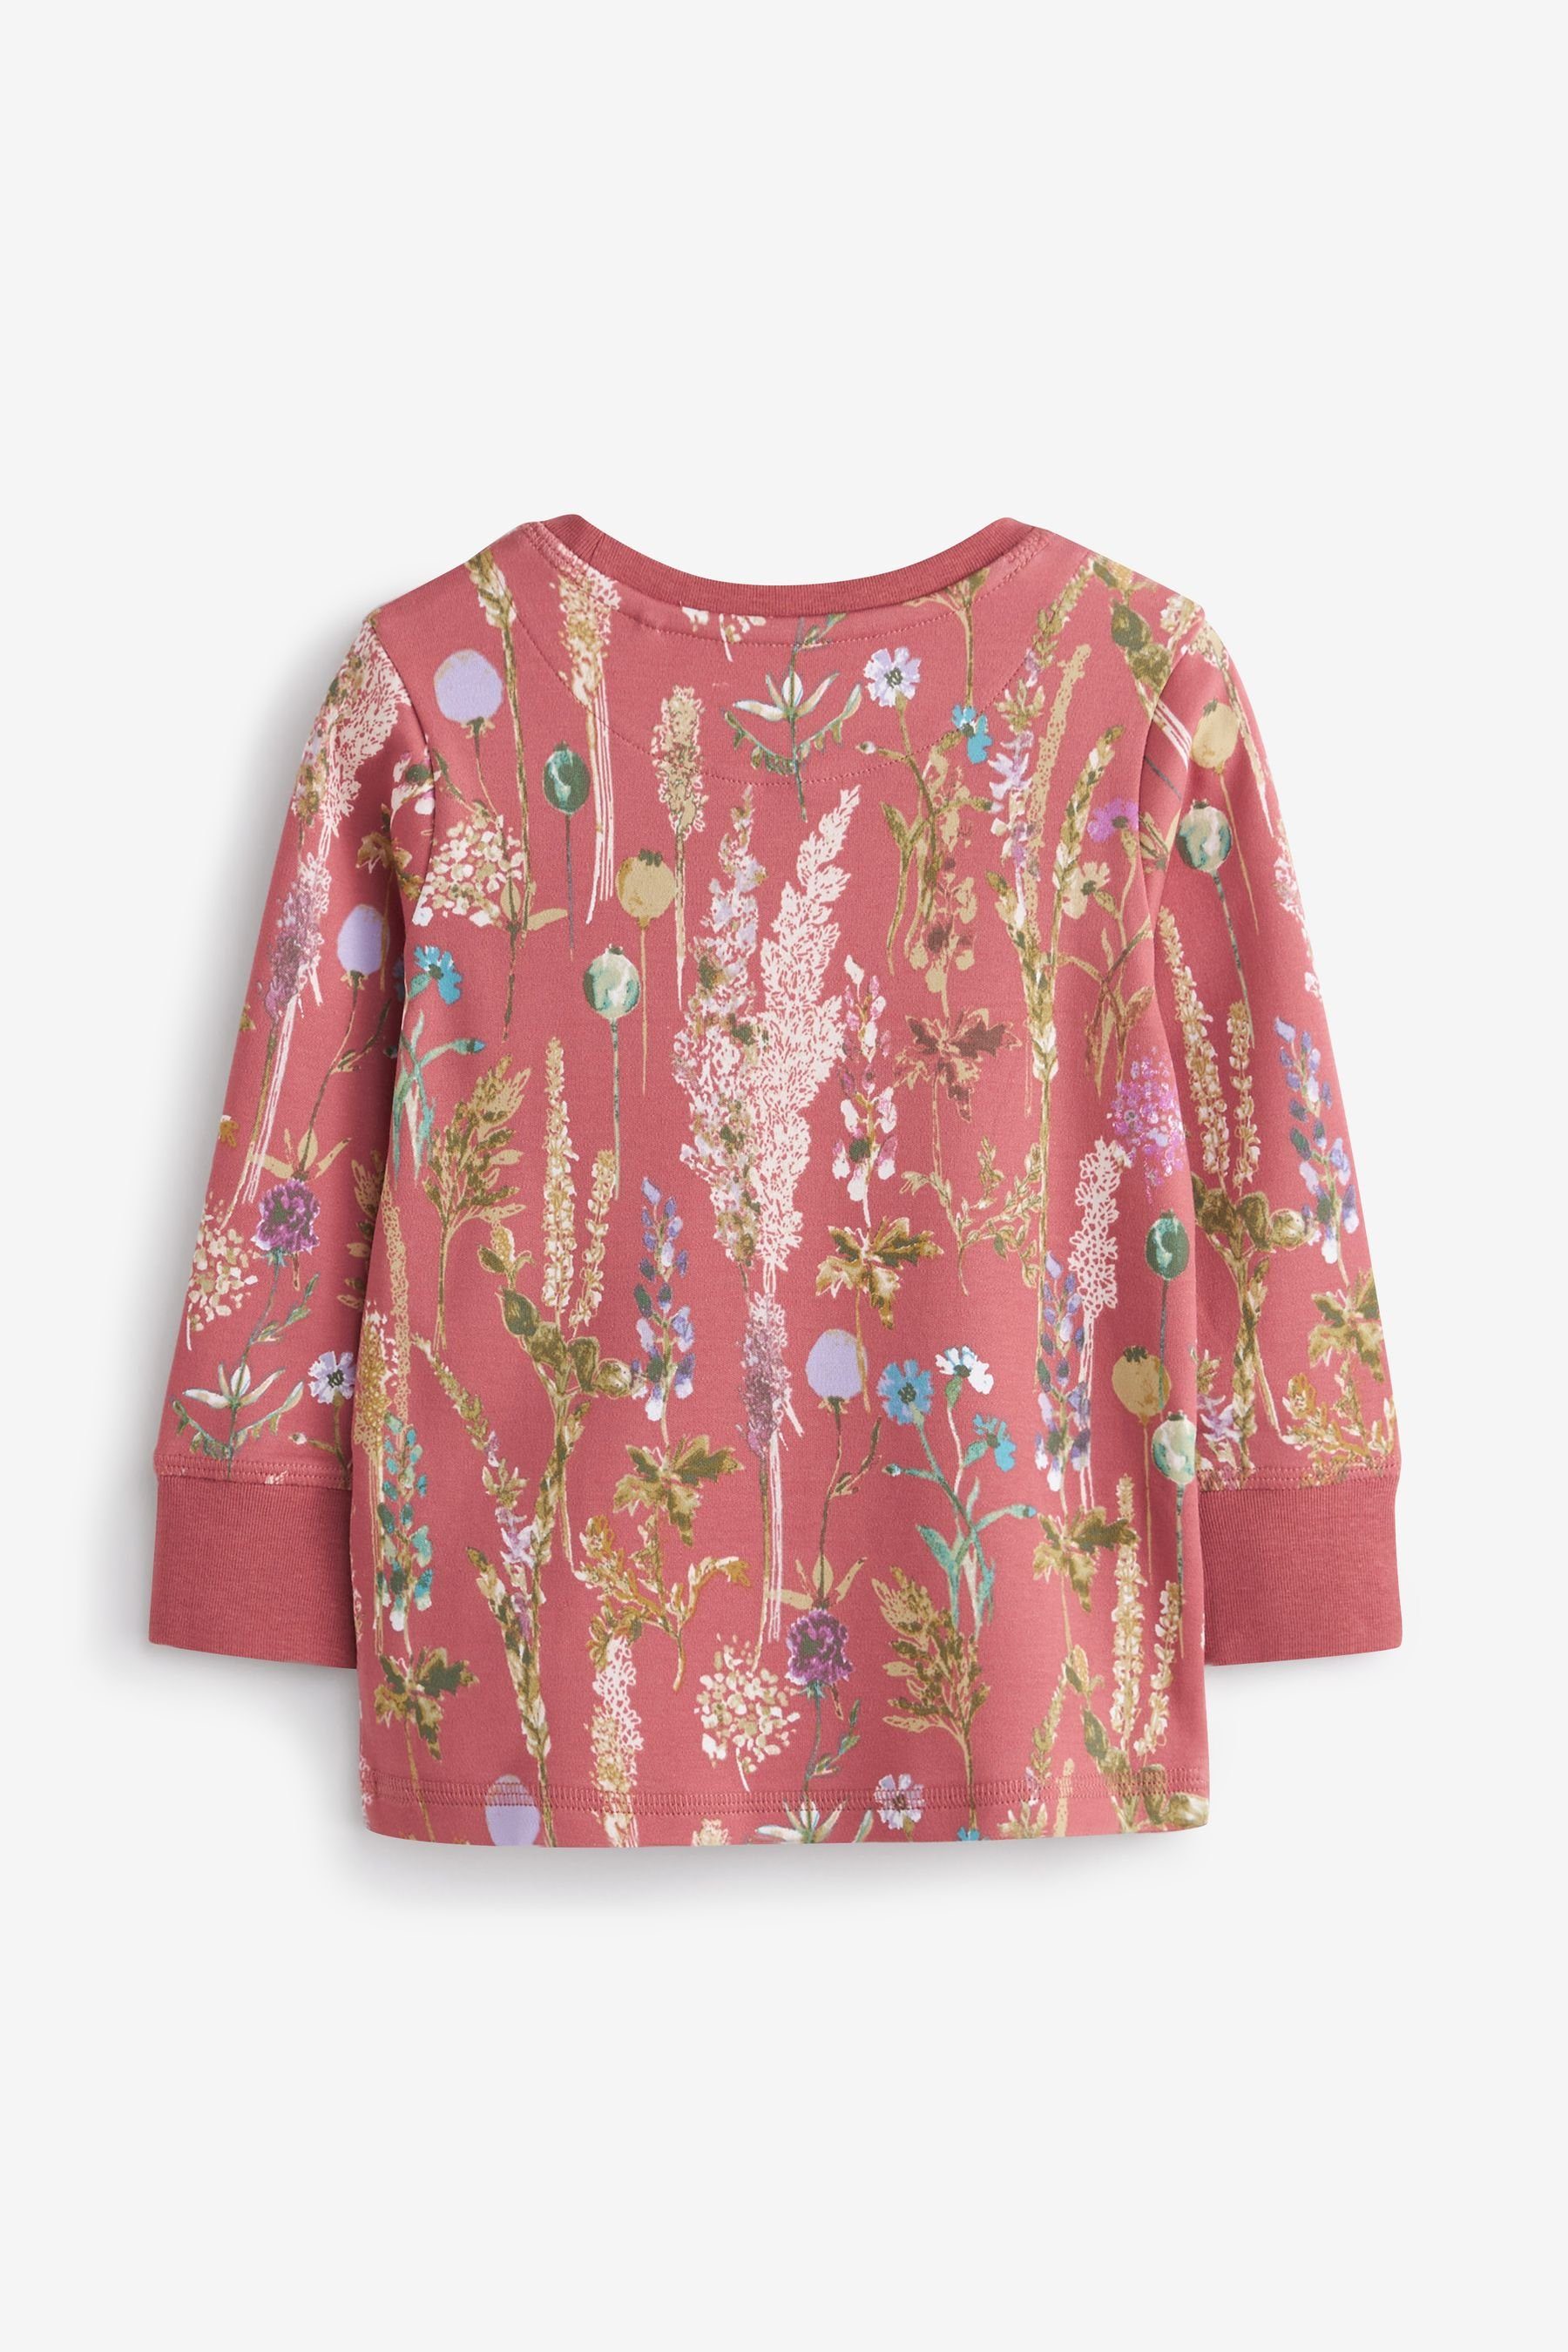 Floral Pyjama (4 Pink/Cream Schlafanzüge 2er-Pack Next tlg)